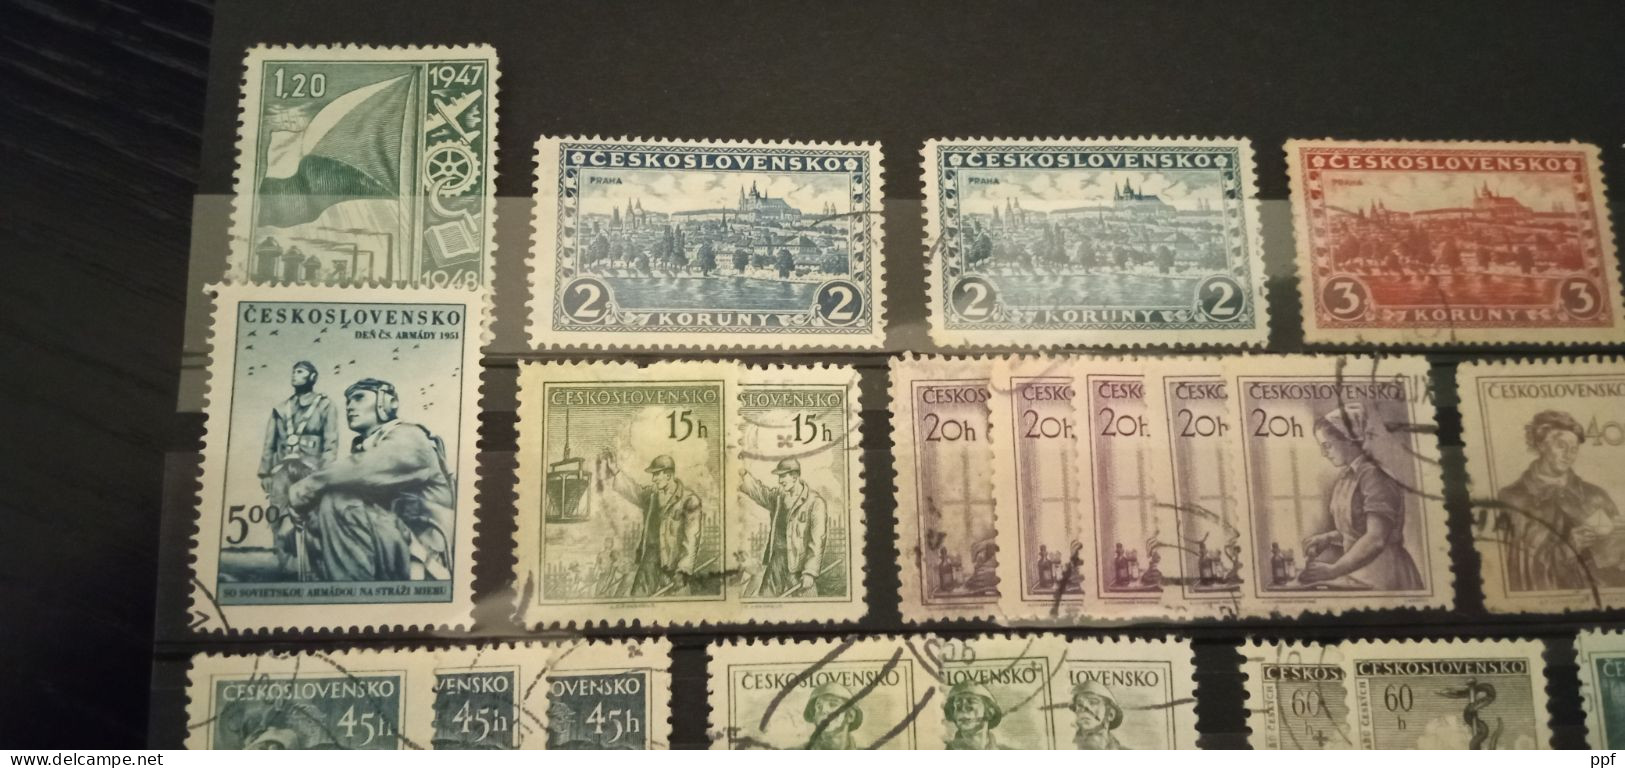 Ceskoslovensko usati lotto dentellati. I francobolli sono in ottime condizioni, entra e guarda le immagini.